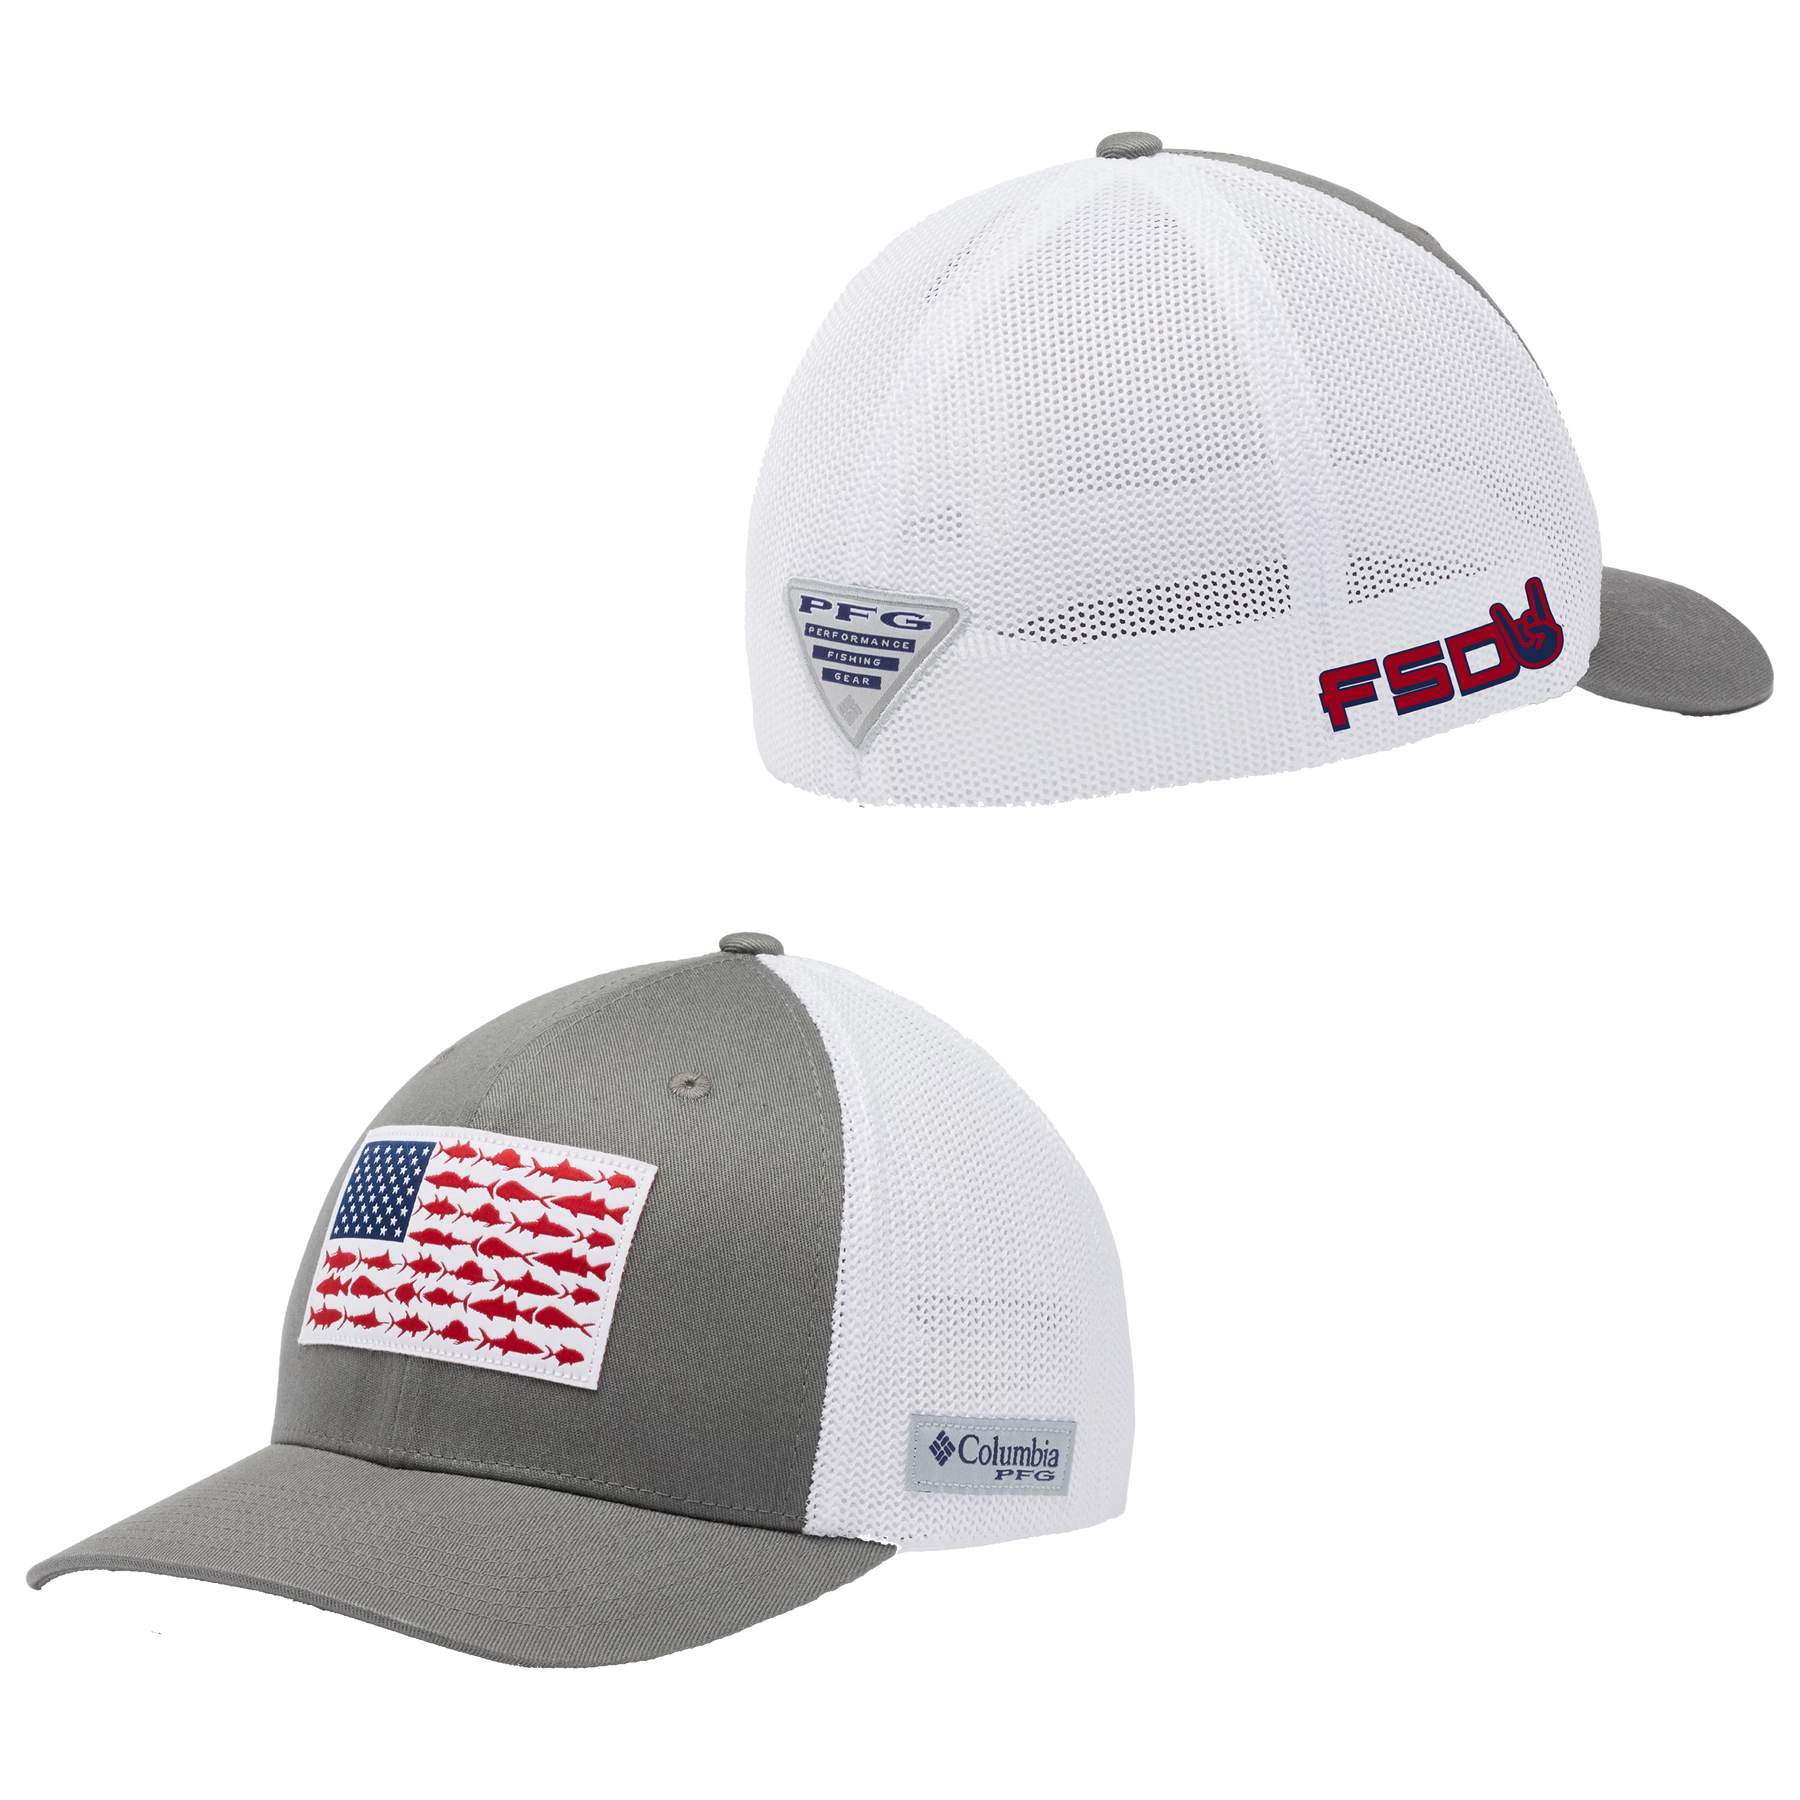 FSD X Columbia PFG Mesh Hat – Full Send Diesel